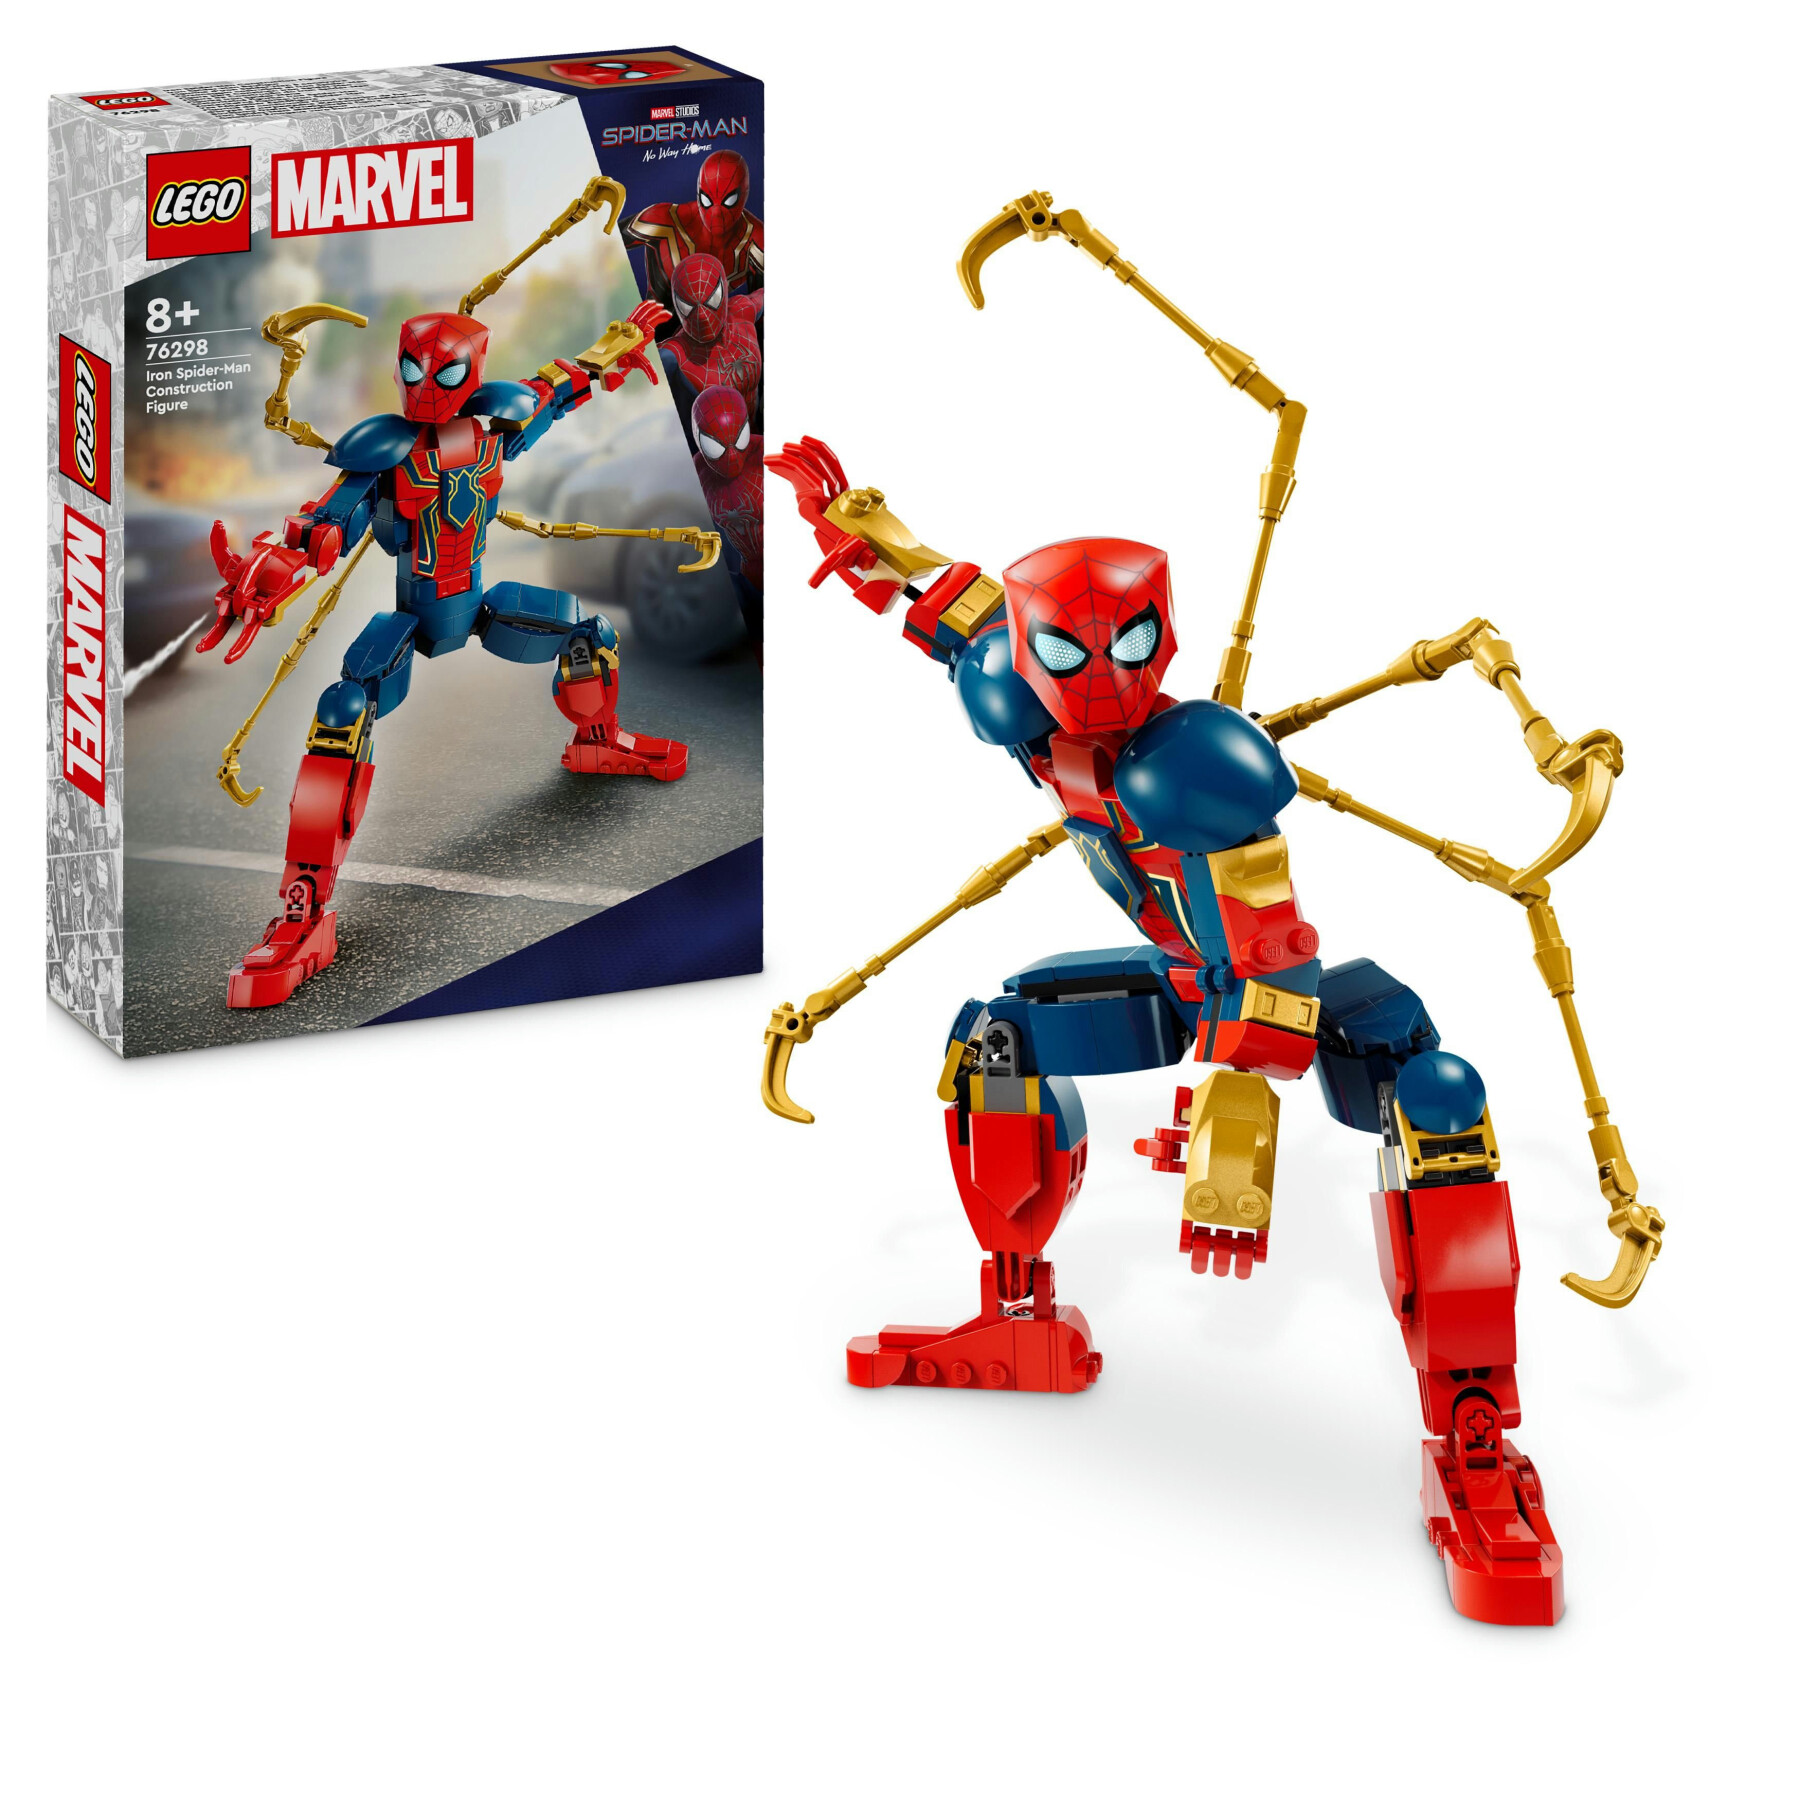 Lego marvel 76298 personaggio costruibile di iron spider-man, gioco per bambini 8+, supereroe snodabile con 4 braccia extra - LEGO SUPER HEROES, Avengers